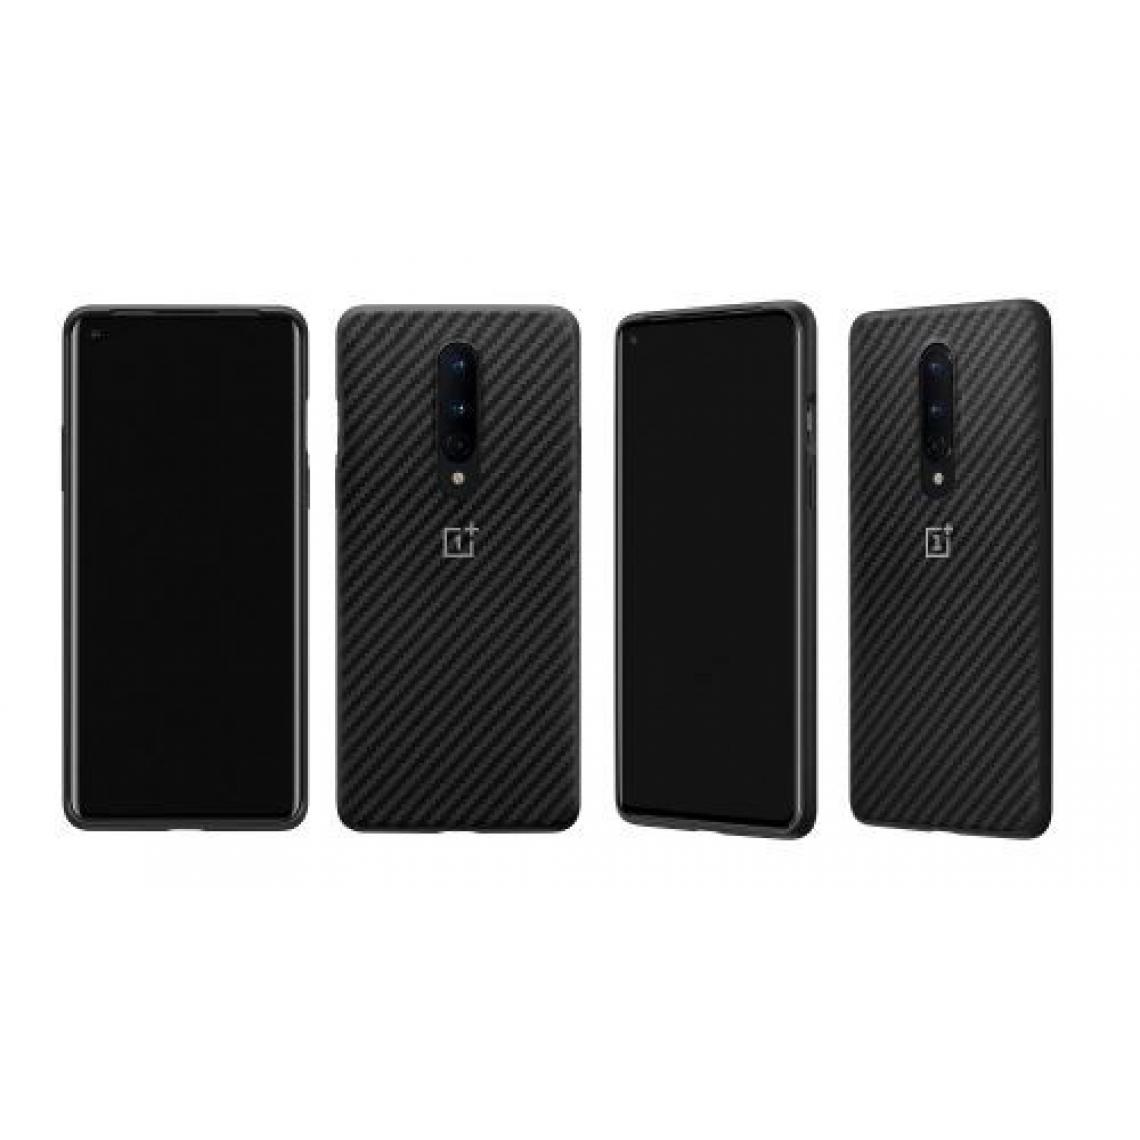 Oneplus - Coque de protection OnePlus 8 Bumper Karbon Noir pour Smartphone OnePlus 8 - Coque, étui smartphone